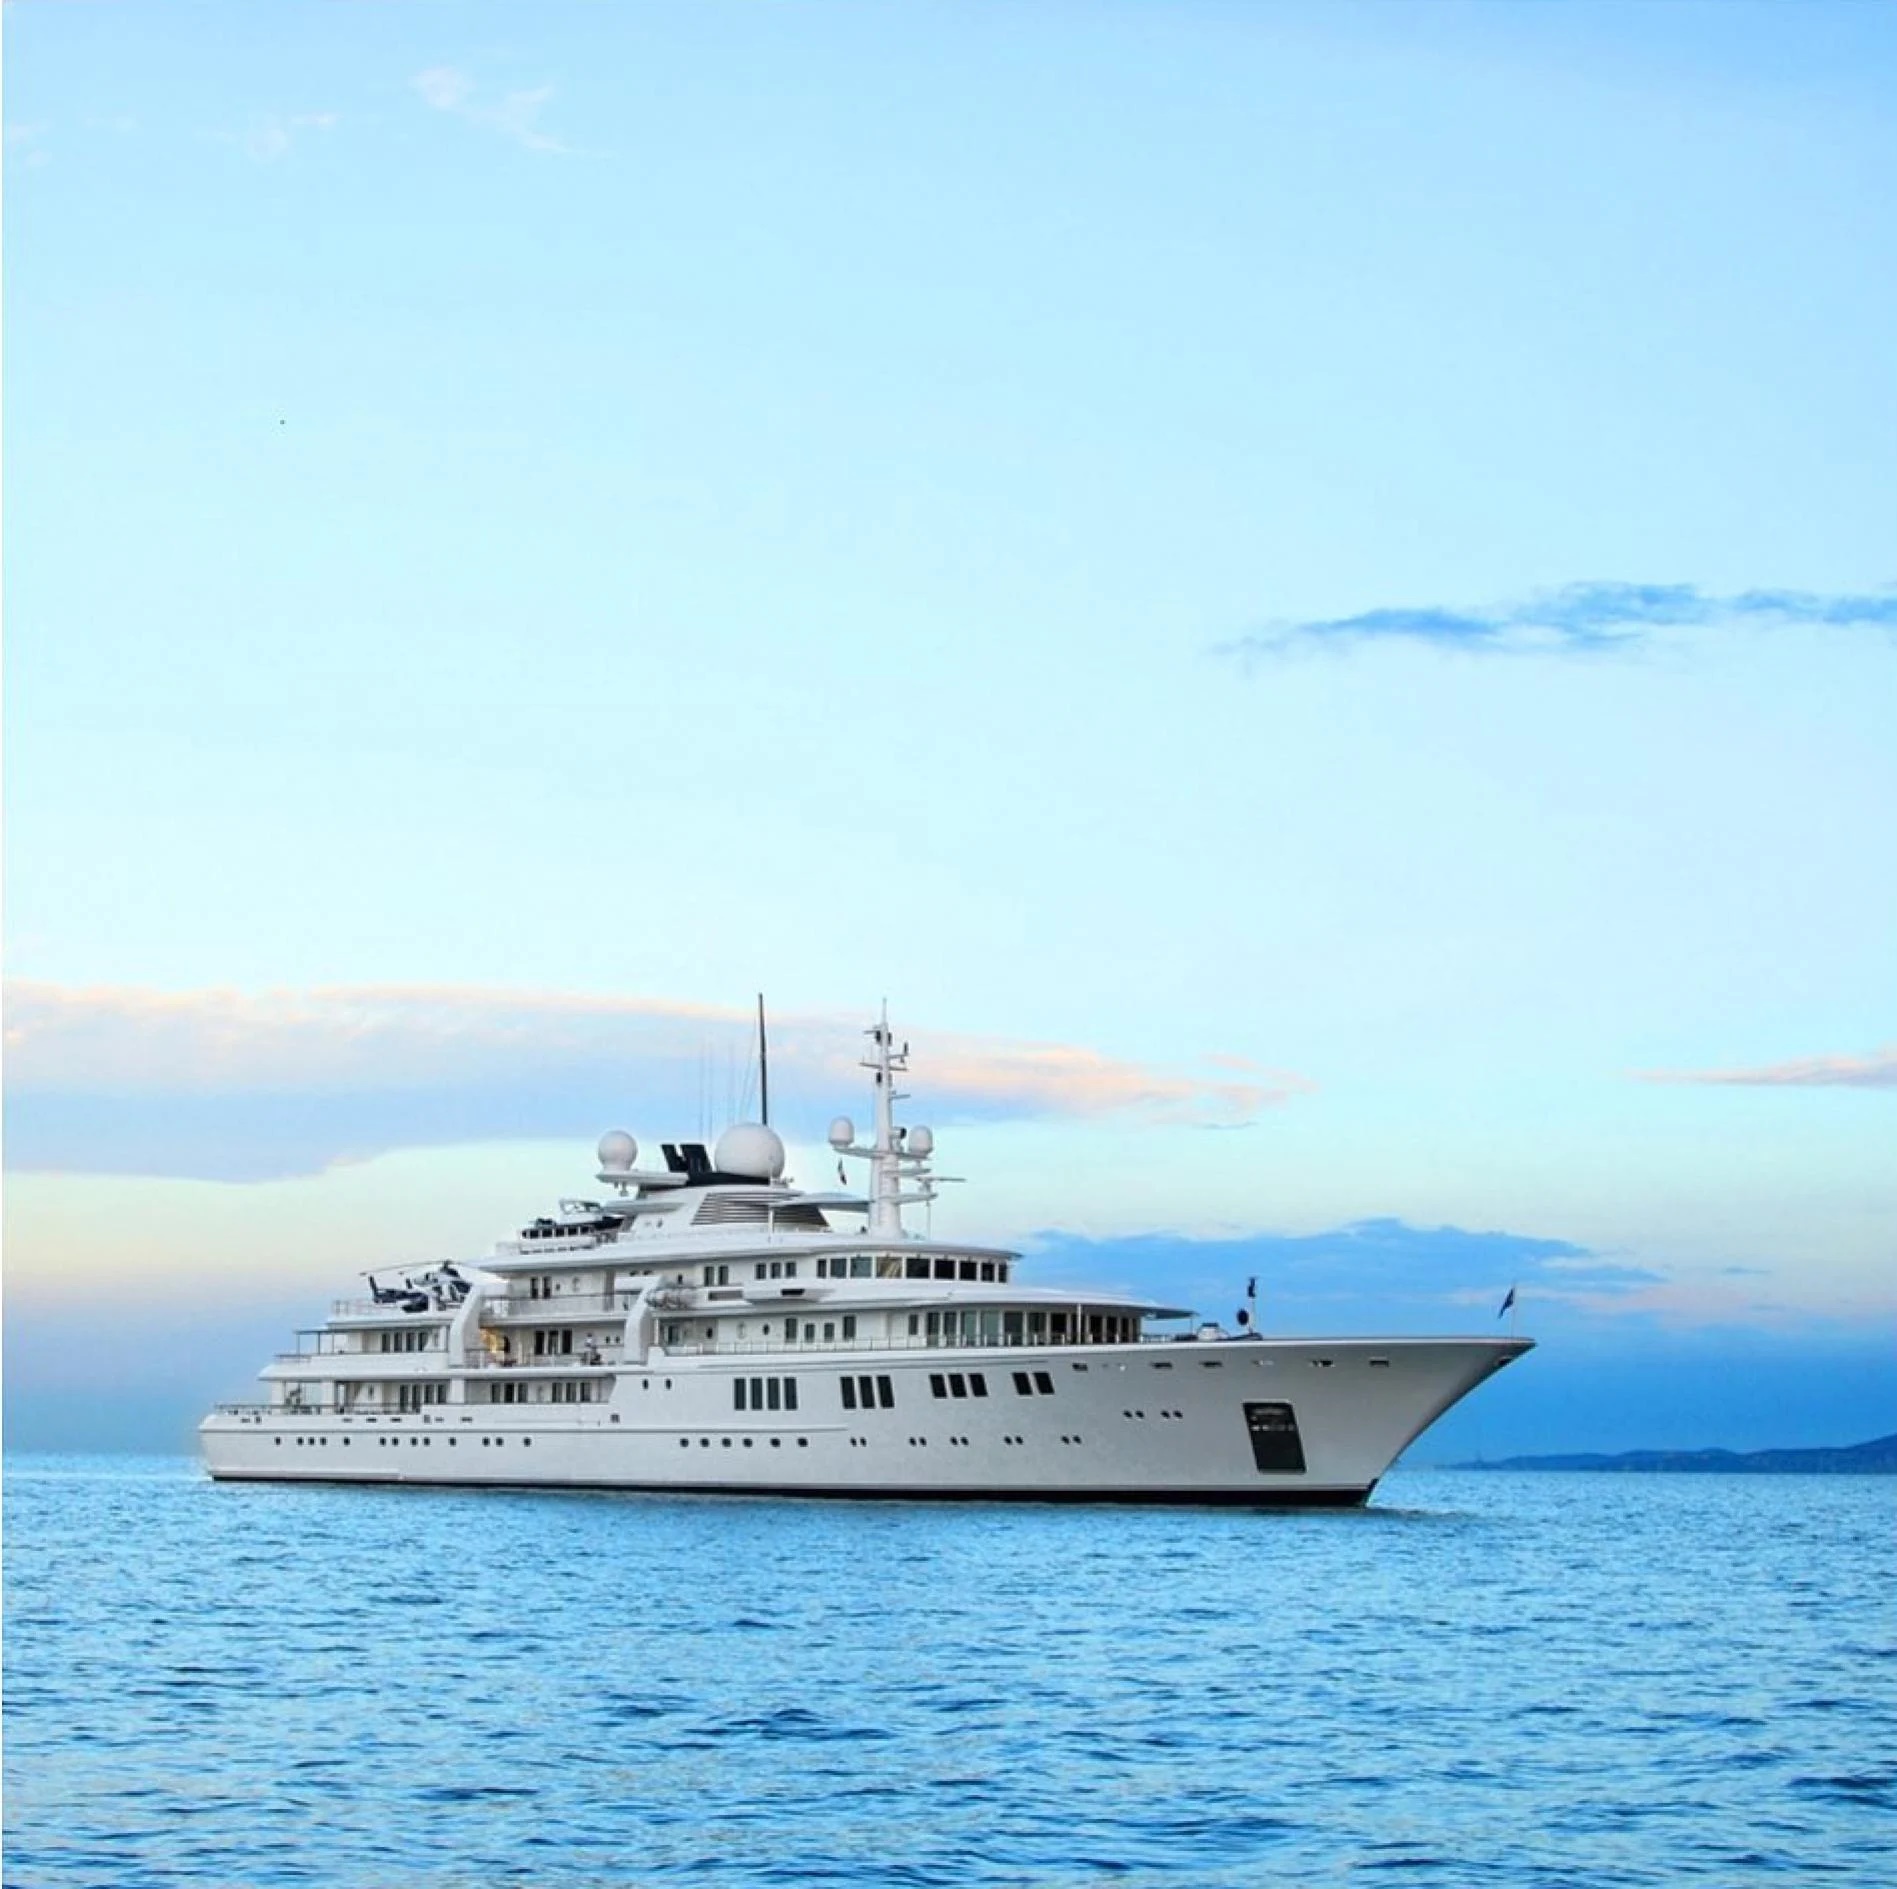 Những con tàu xa hoa bậc nhất triển lãm du thuyền Monaco, nơi quy tụ tài sản của nhà giàu thế giới - ảnh 5